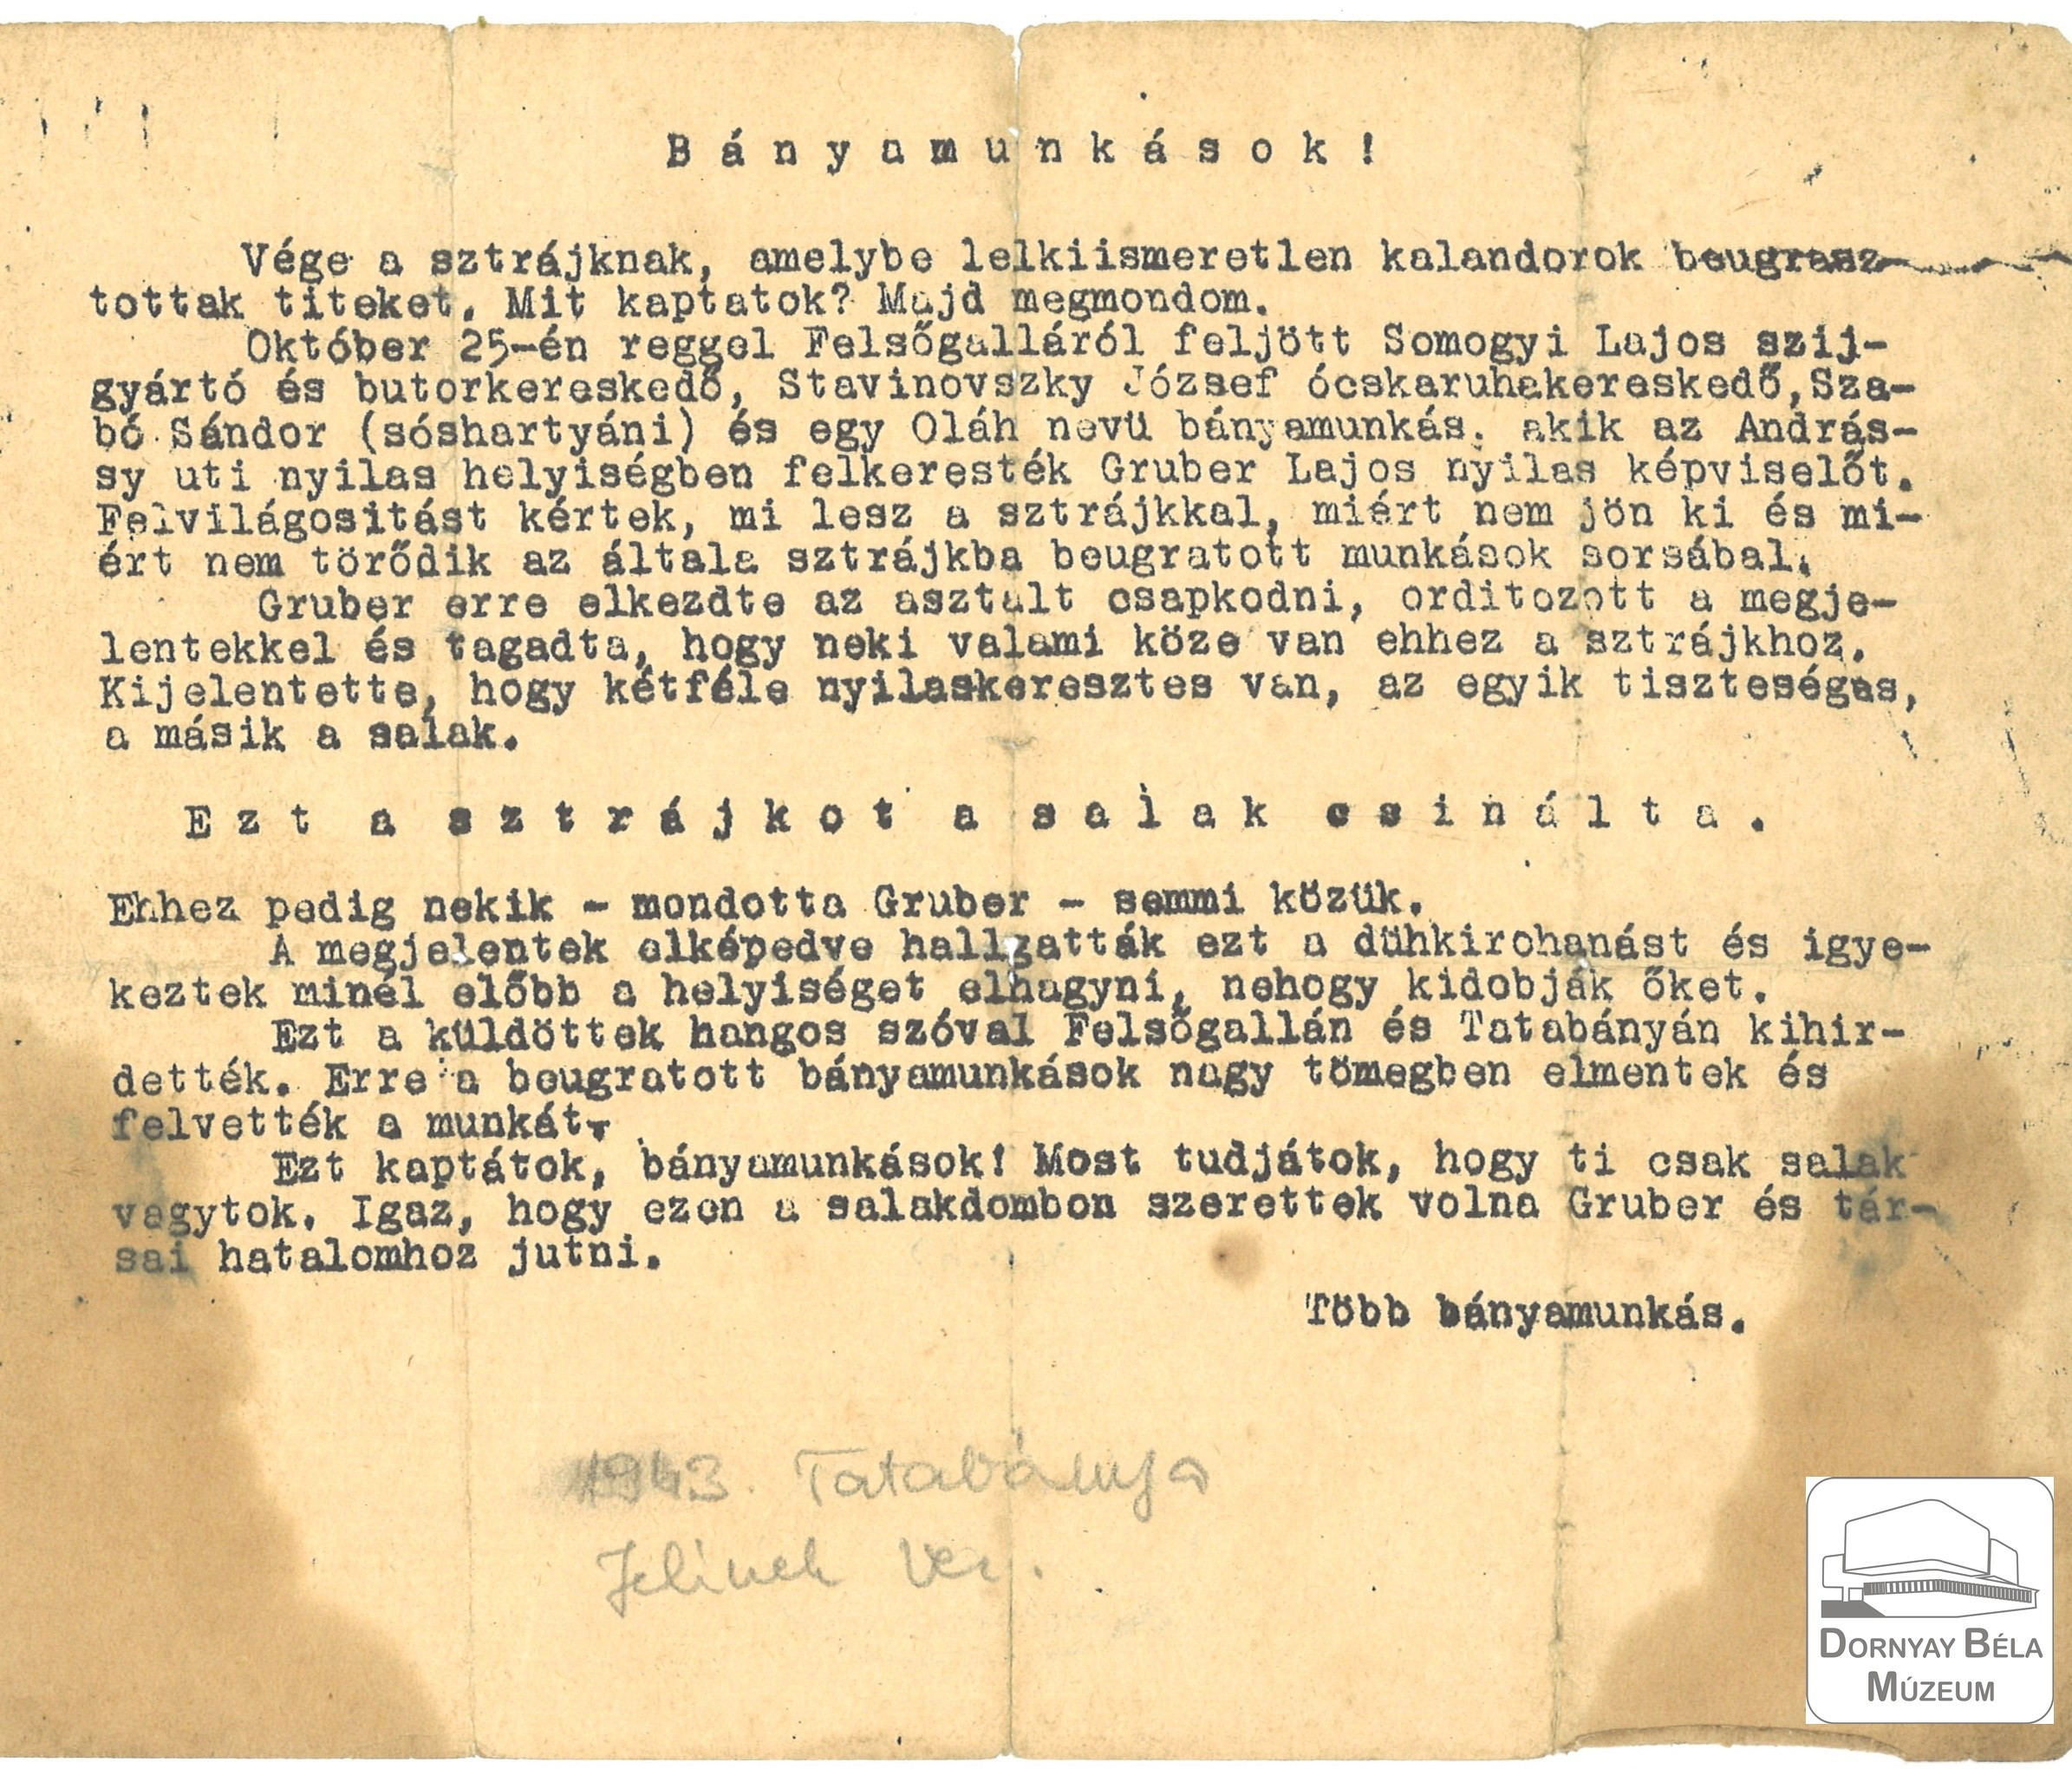 Röpirat az 1943. okt. 25-én megtartott sztárjkról. (Dornyay Béla Múzeum, Salgótarján CC BY-NC-SA)